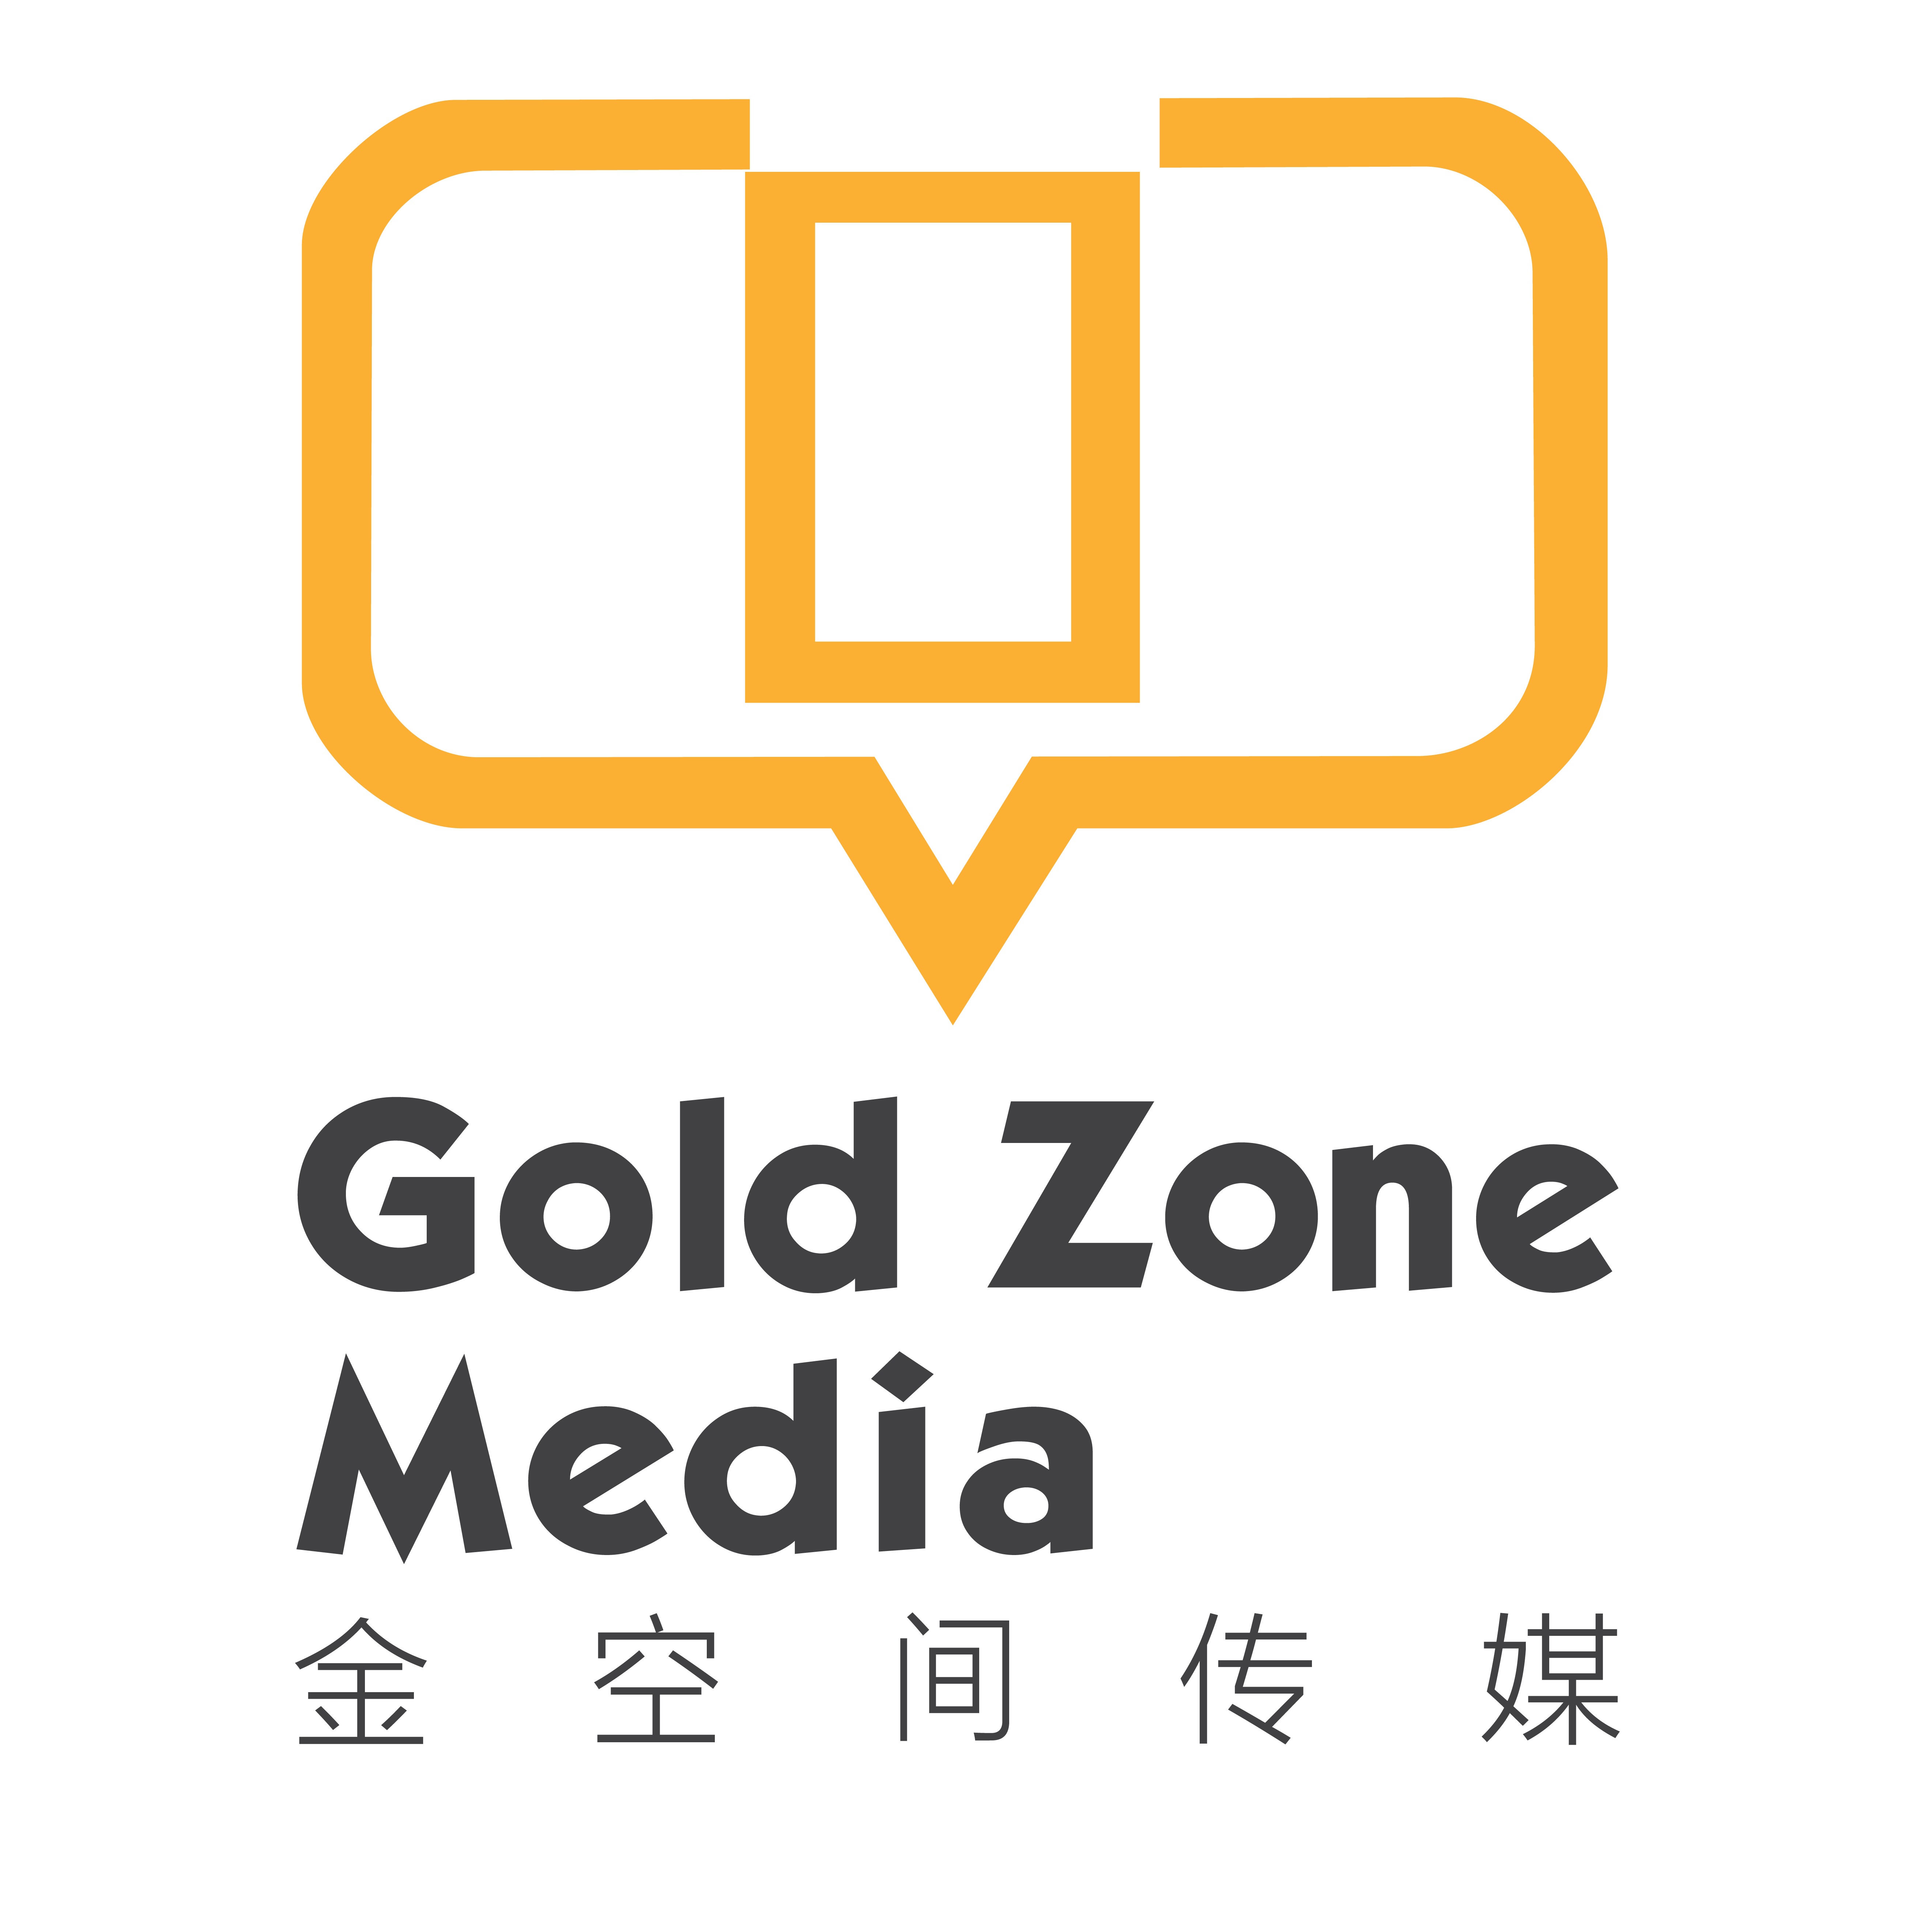 Gold Zone Media Co., Ltd